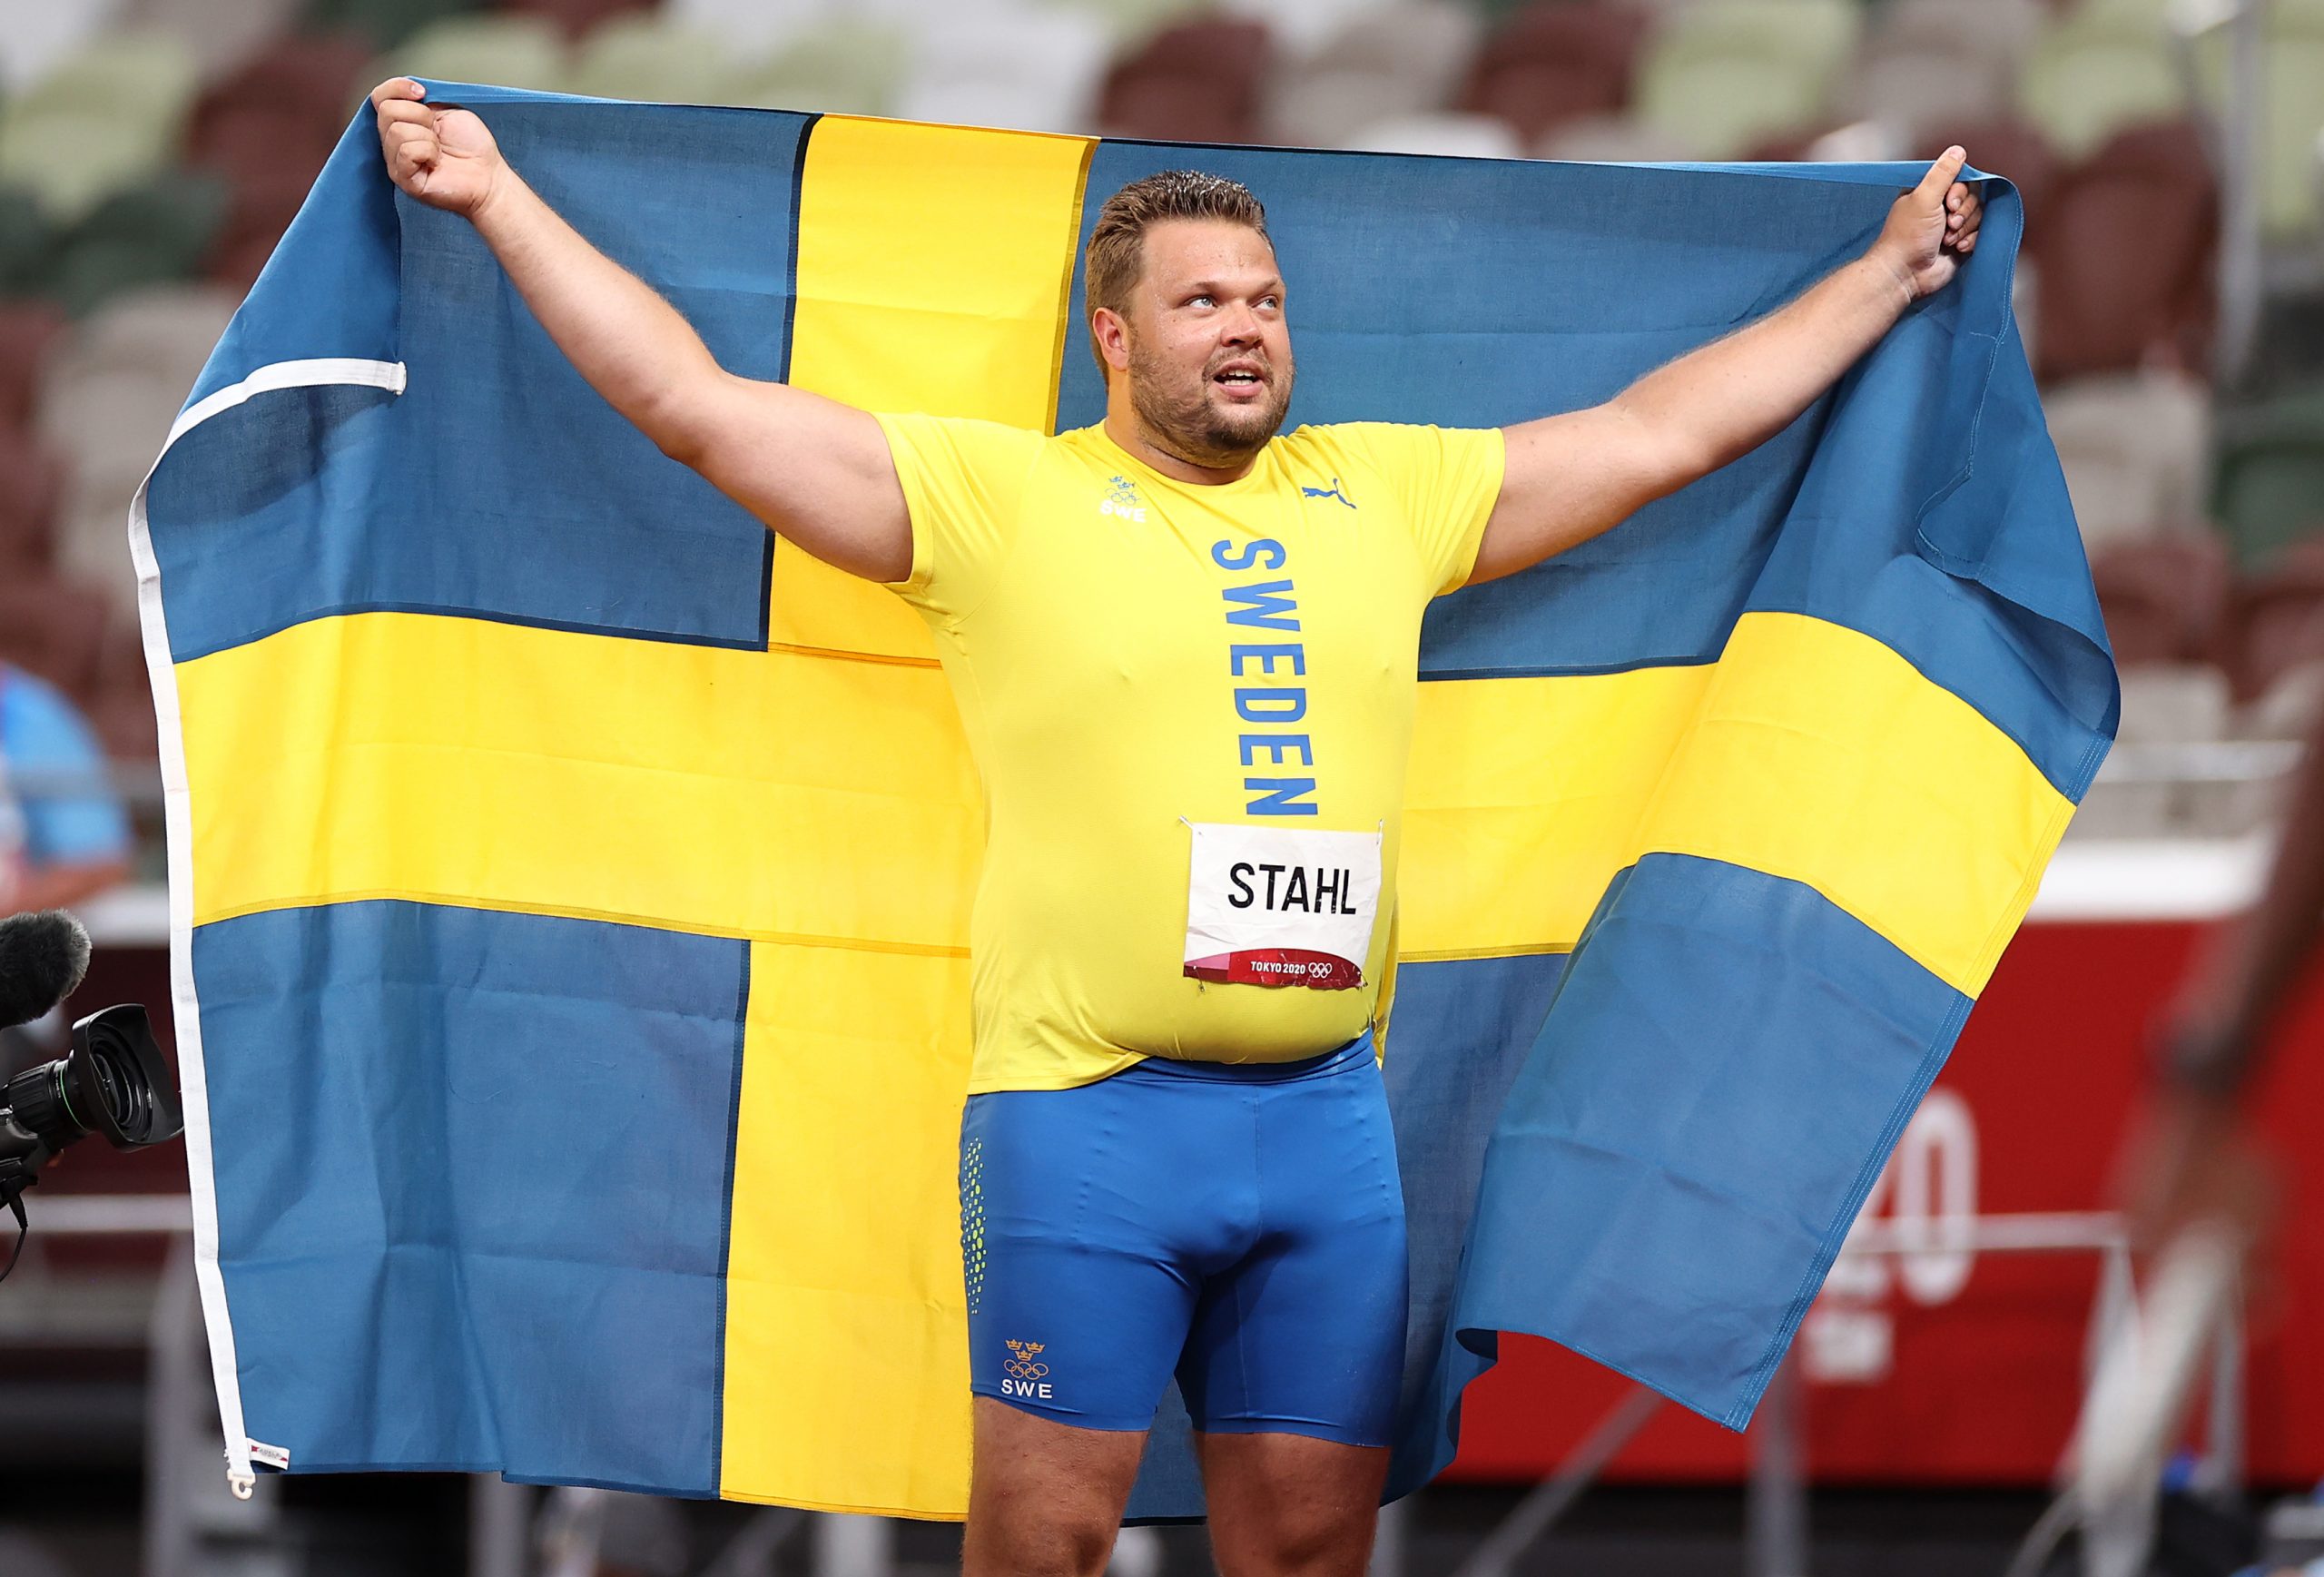 Suécia ganha duas medalhas no atletismo